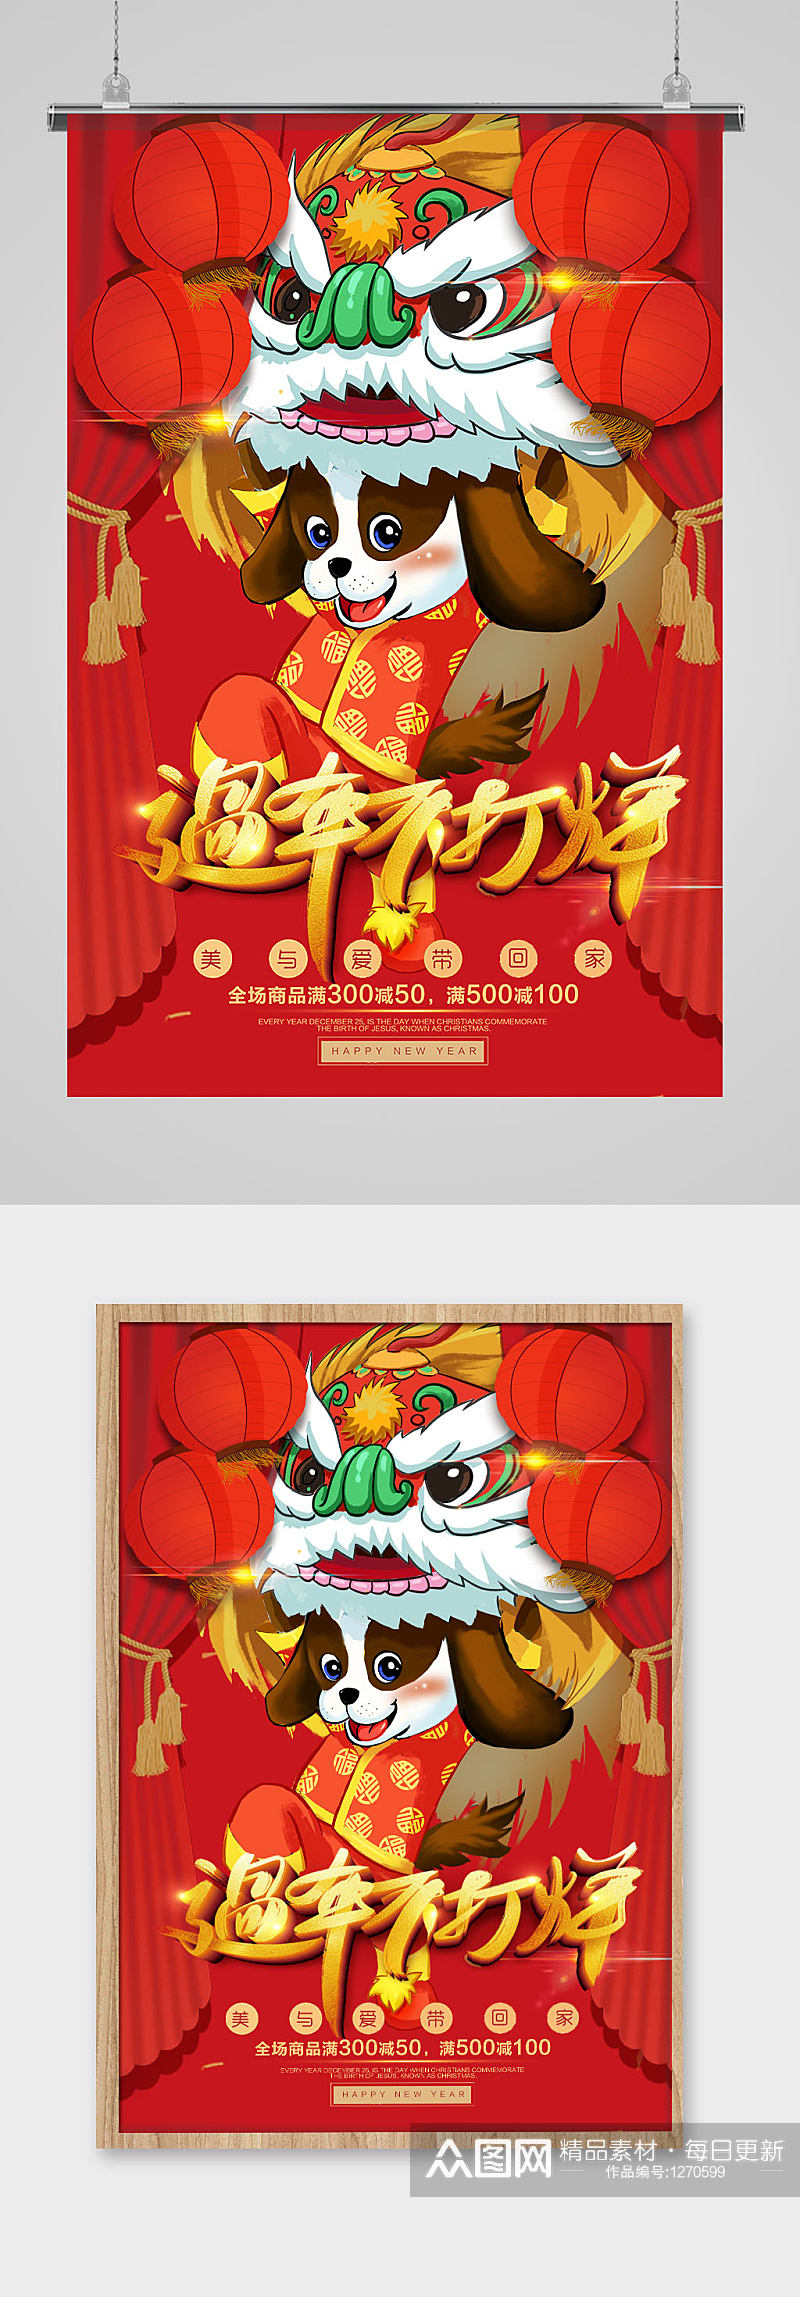 中国传统红舞狮新年春节不打烊海报素材